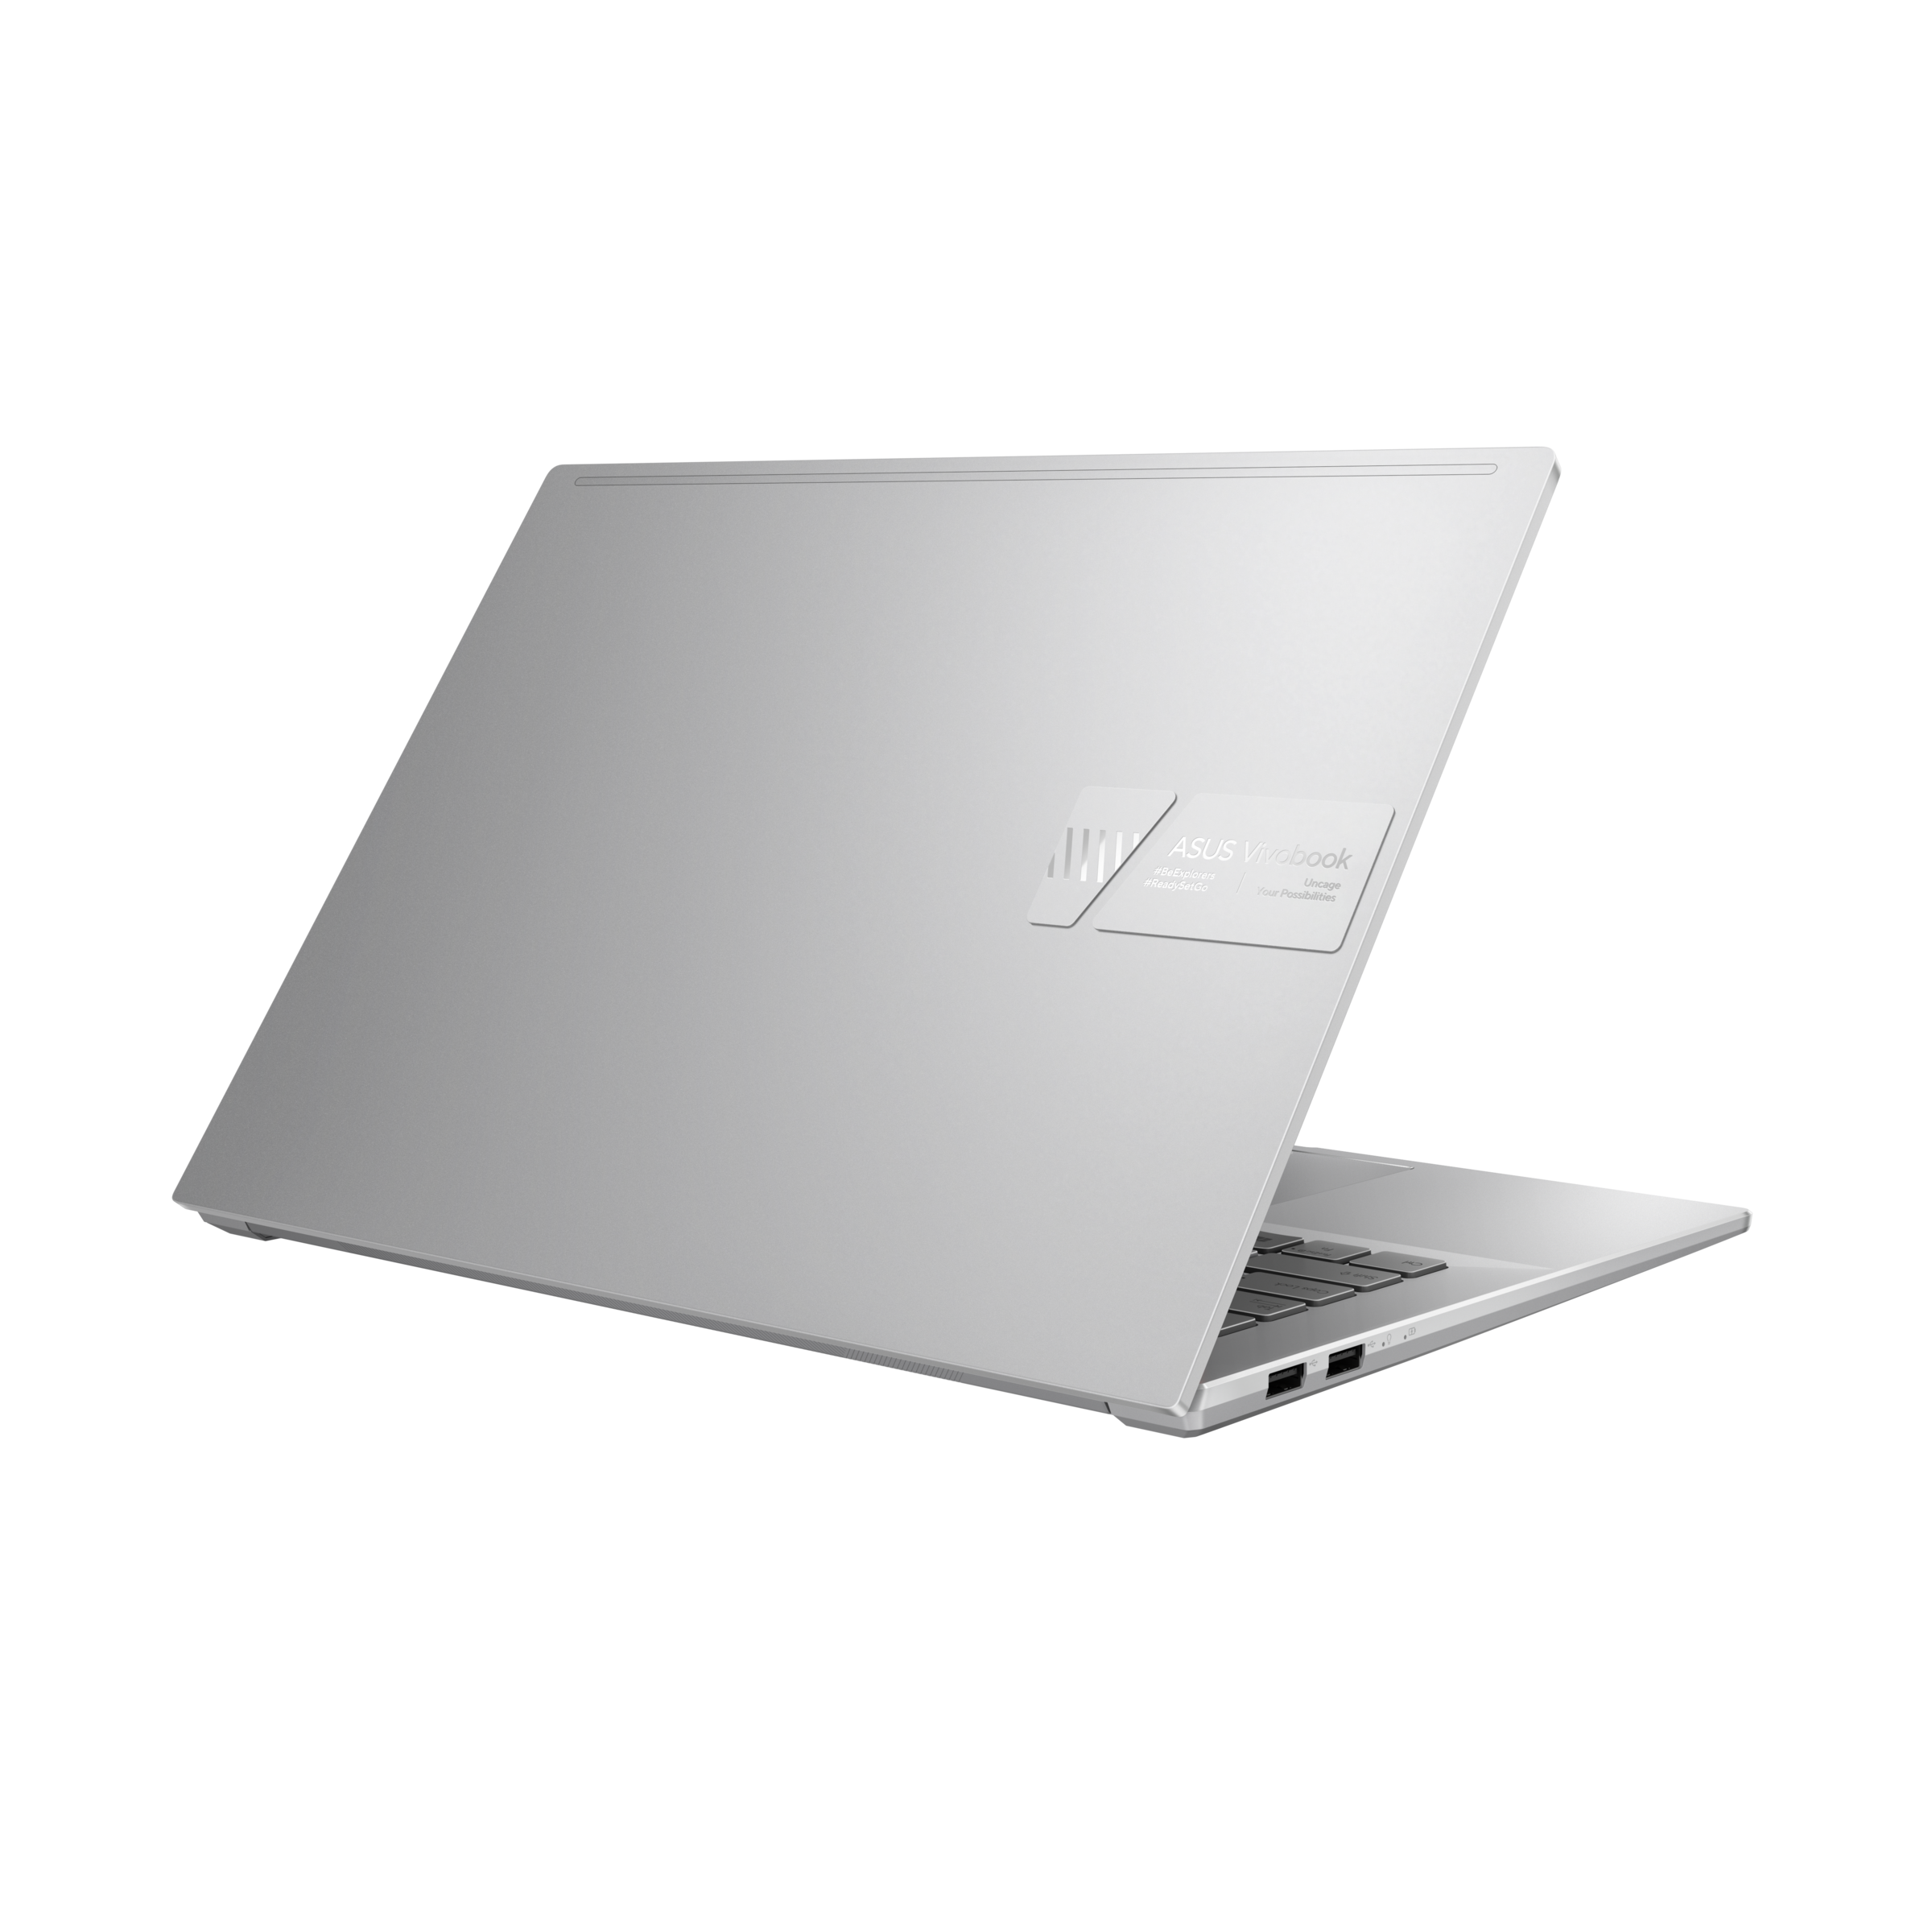 Vivobook Pro 14X OLED (N7400, 11th Gen Intel) | VivoBook | ノート